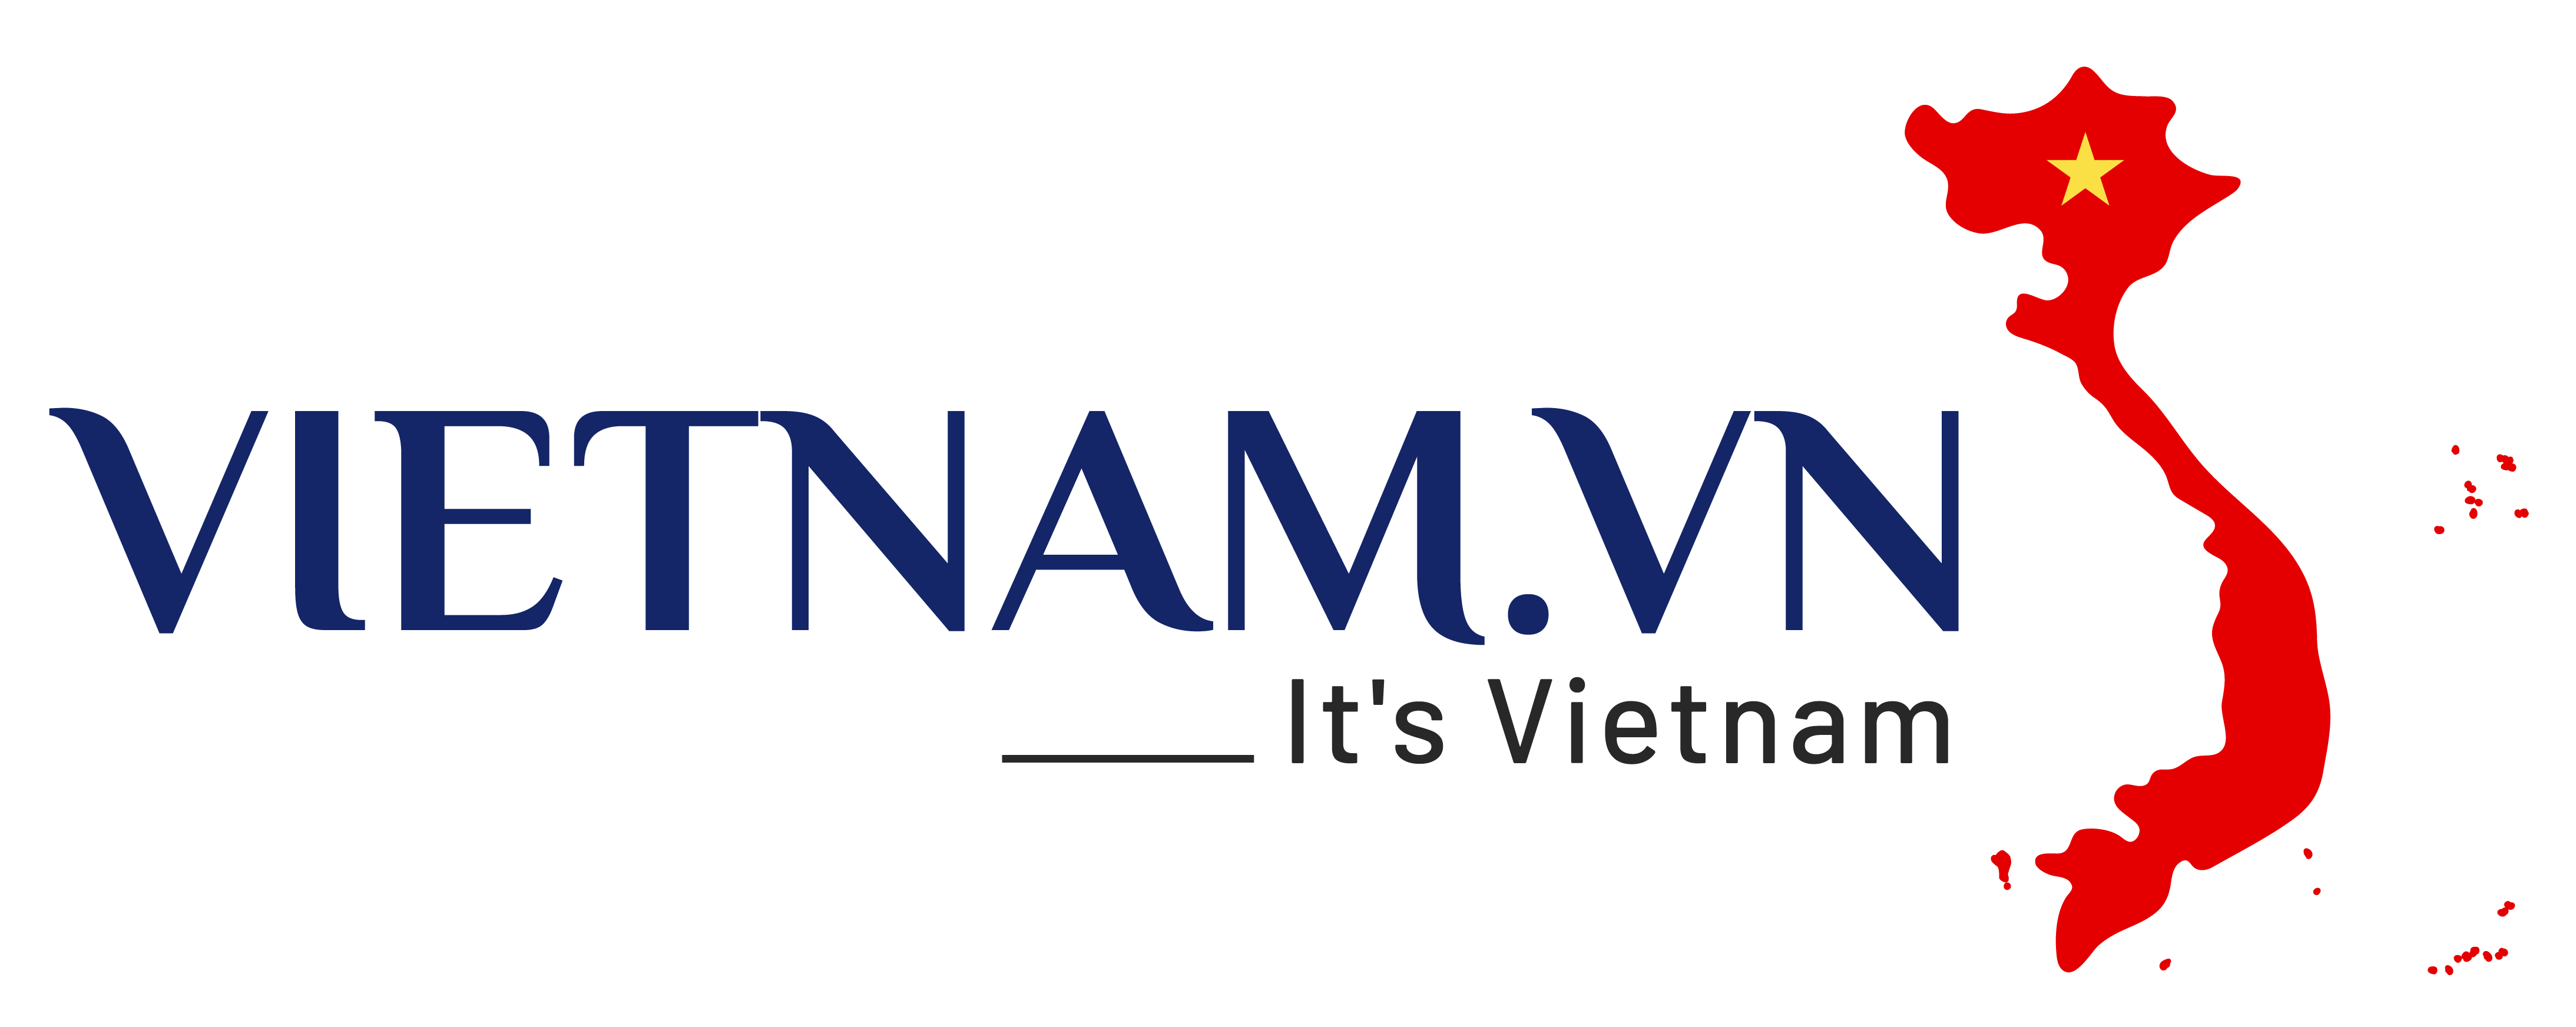 Vietnam.vn Social Network Logo